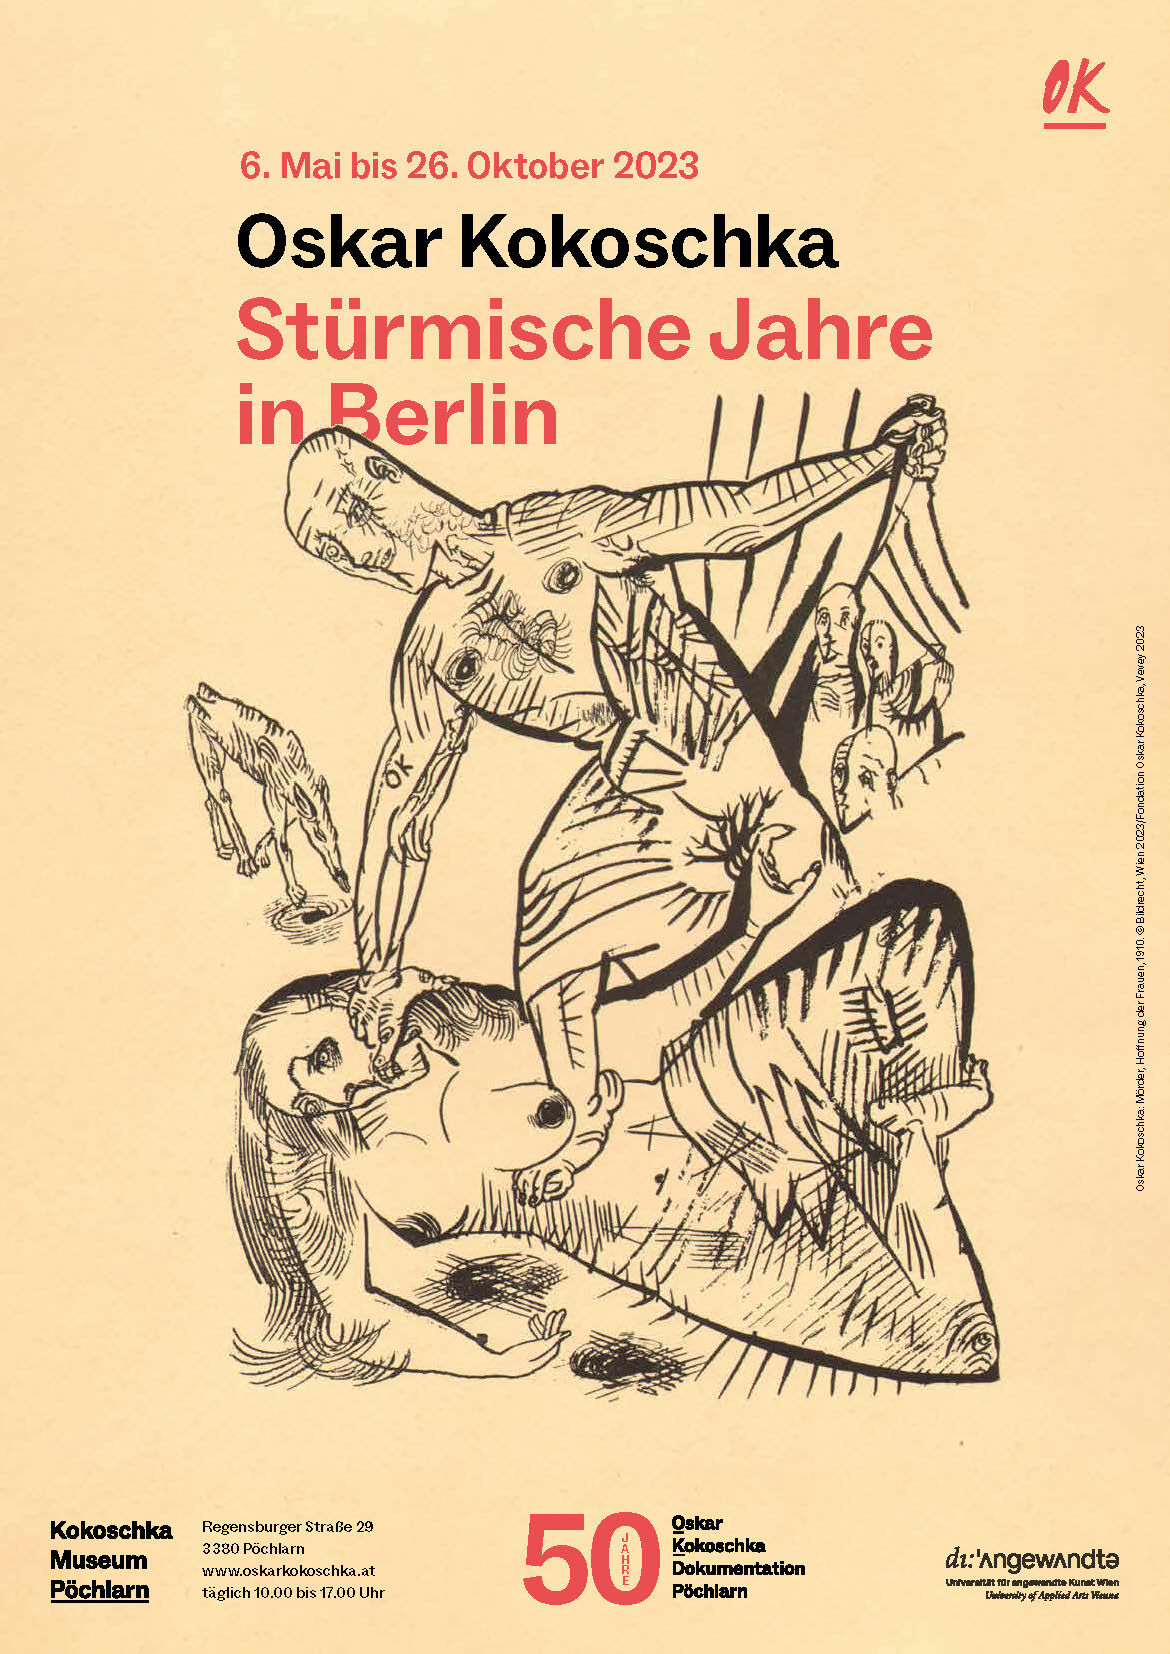 Oskar Kokoschka: Mörder, Hoffnung der Frauen, 1910. Oskar Kokoschka Zentrum, Universität für angewandte Kunst Wien. © Bildrecht, Wien 2023 / Fondation Oskar Kokoschka, Vevey 2023